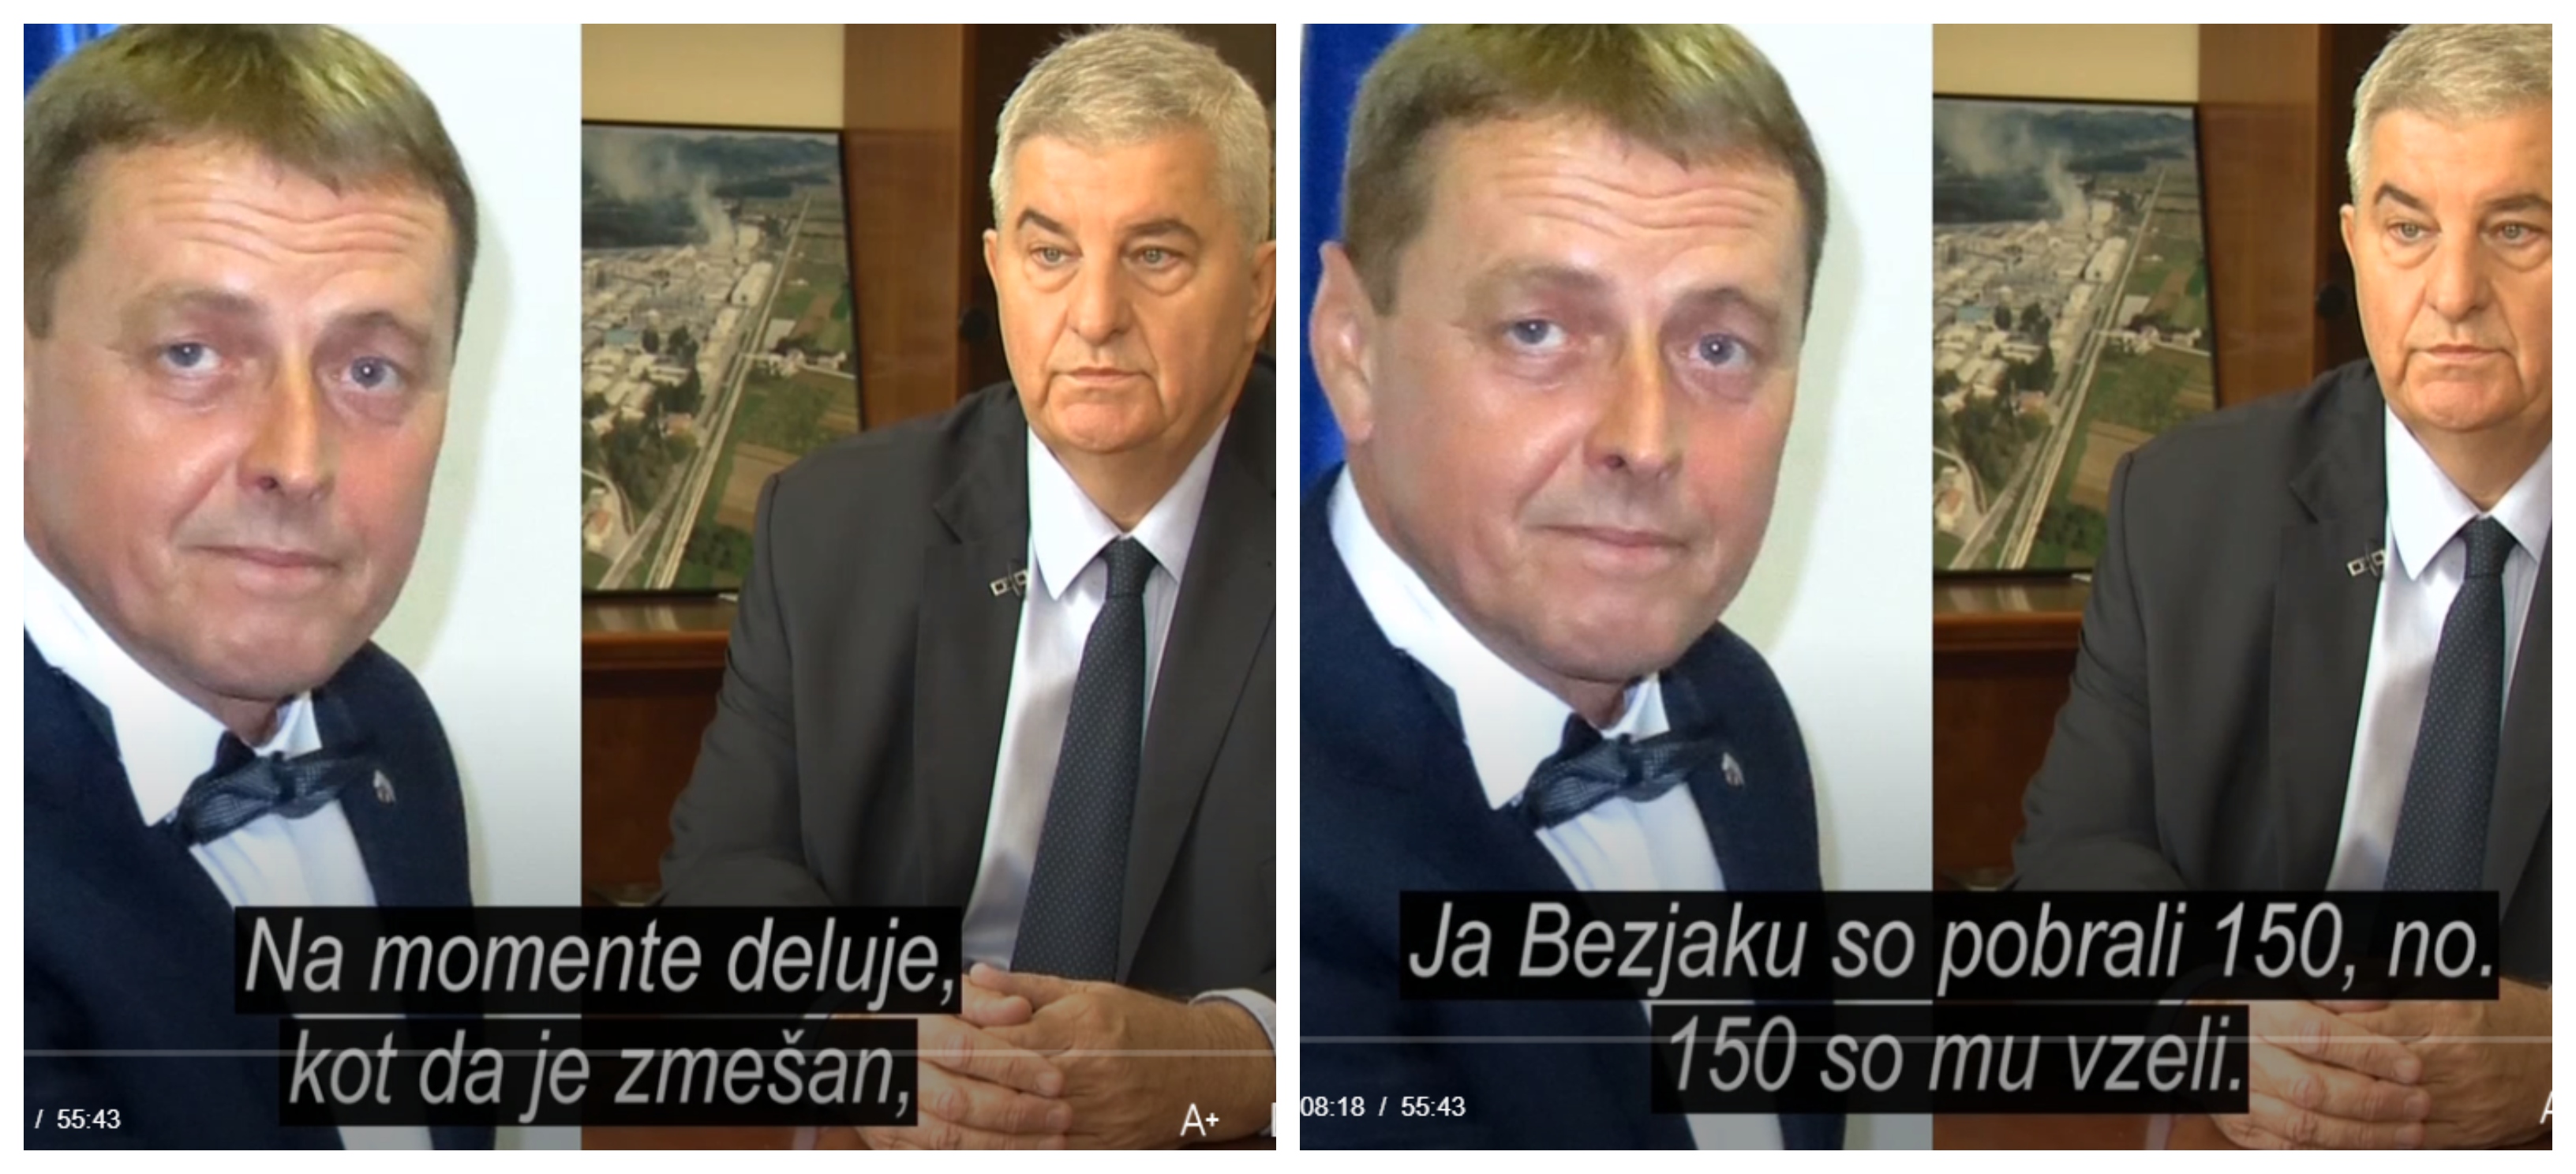 Del pogovora med notarjem Gorazdom Fišrerjem in Veselinom Djurovićem. (Foto: Tarča RTV Slo)